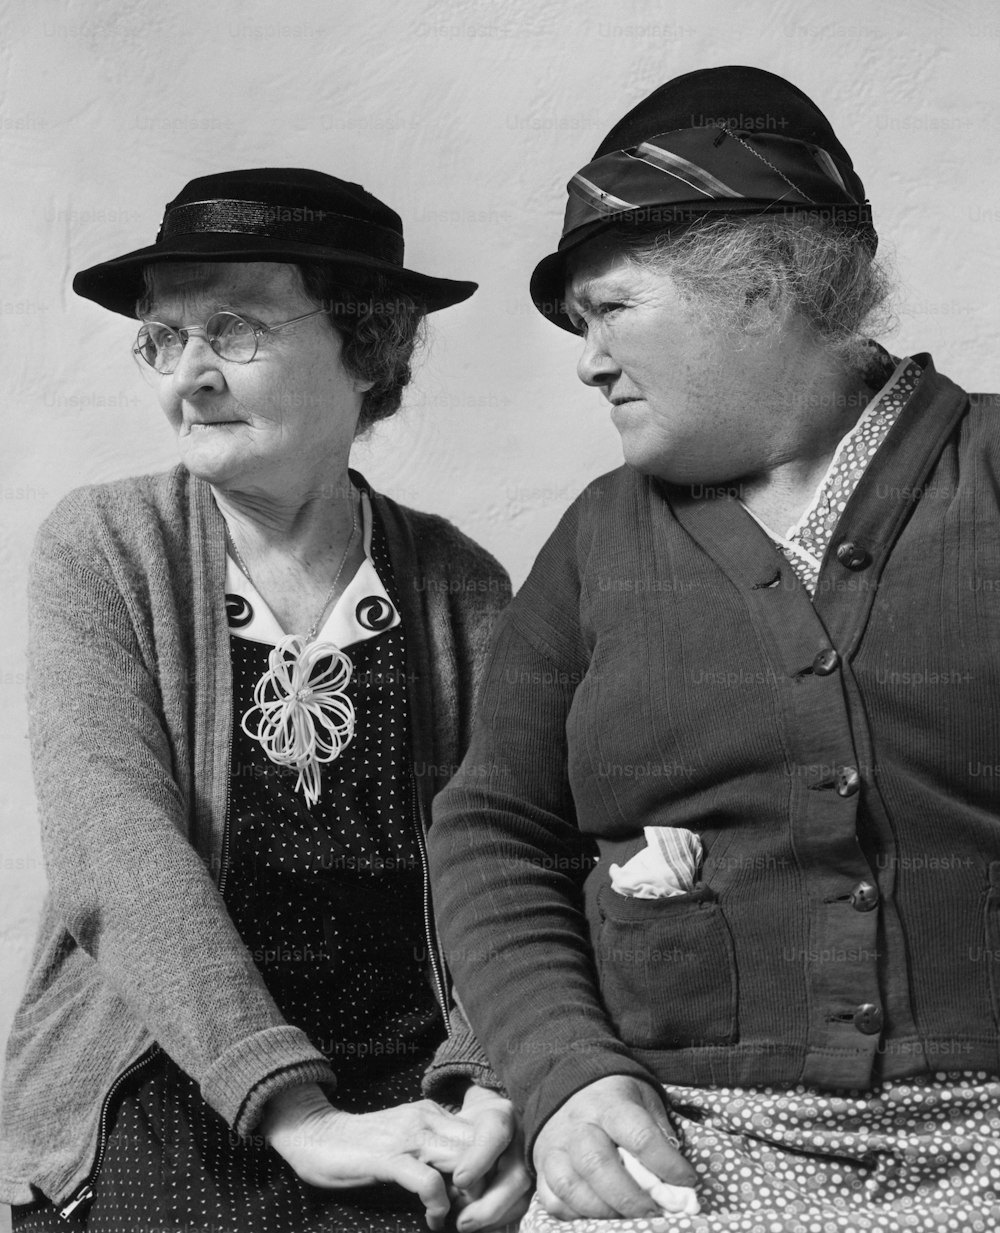 ESTADOS UNIDOS - Alrededor de la década de 1930: Dos mujeres sentadas juntas, hablando.